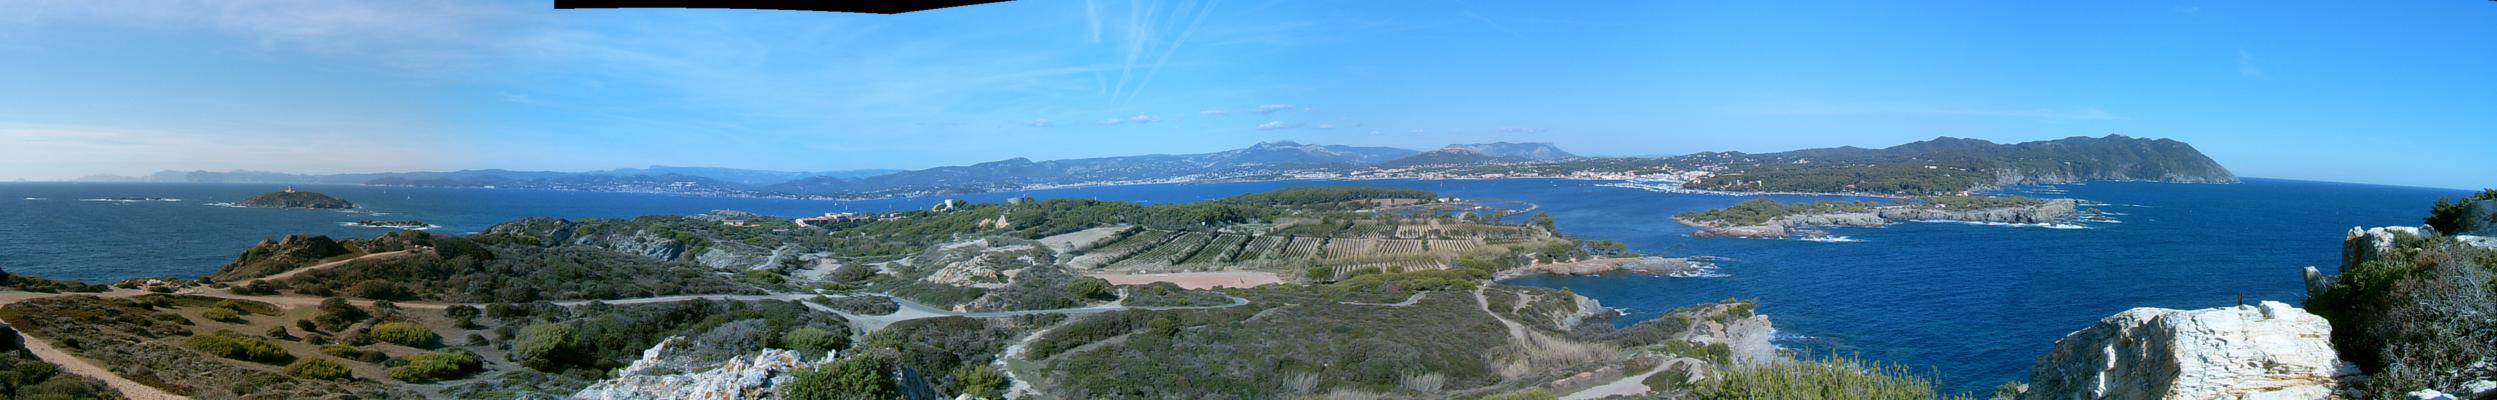 Panorama sur l’Île des Embiez (26 Septembre 2004)